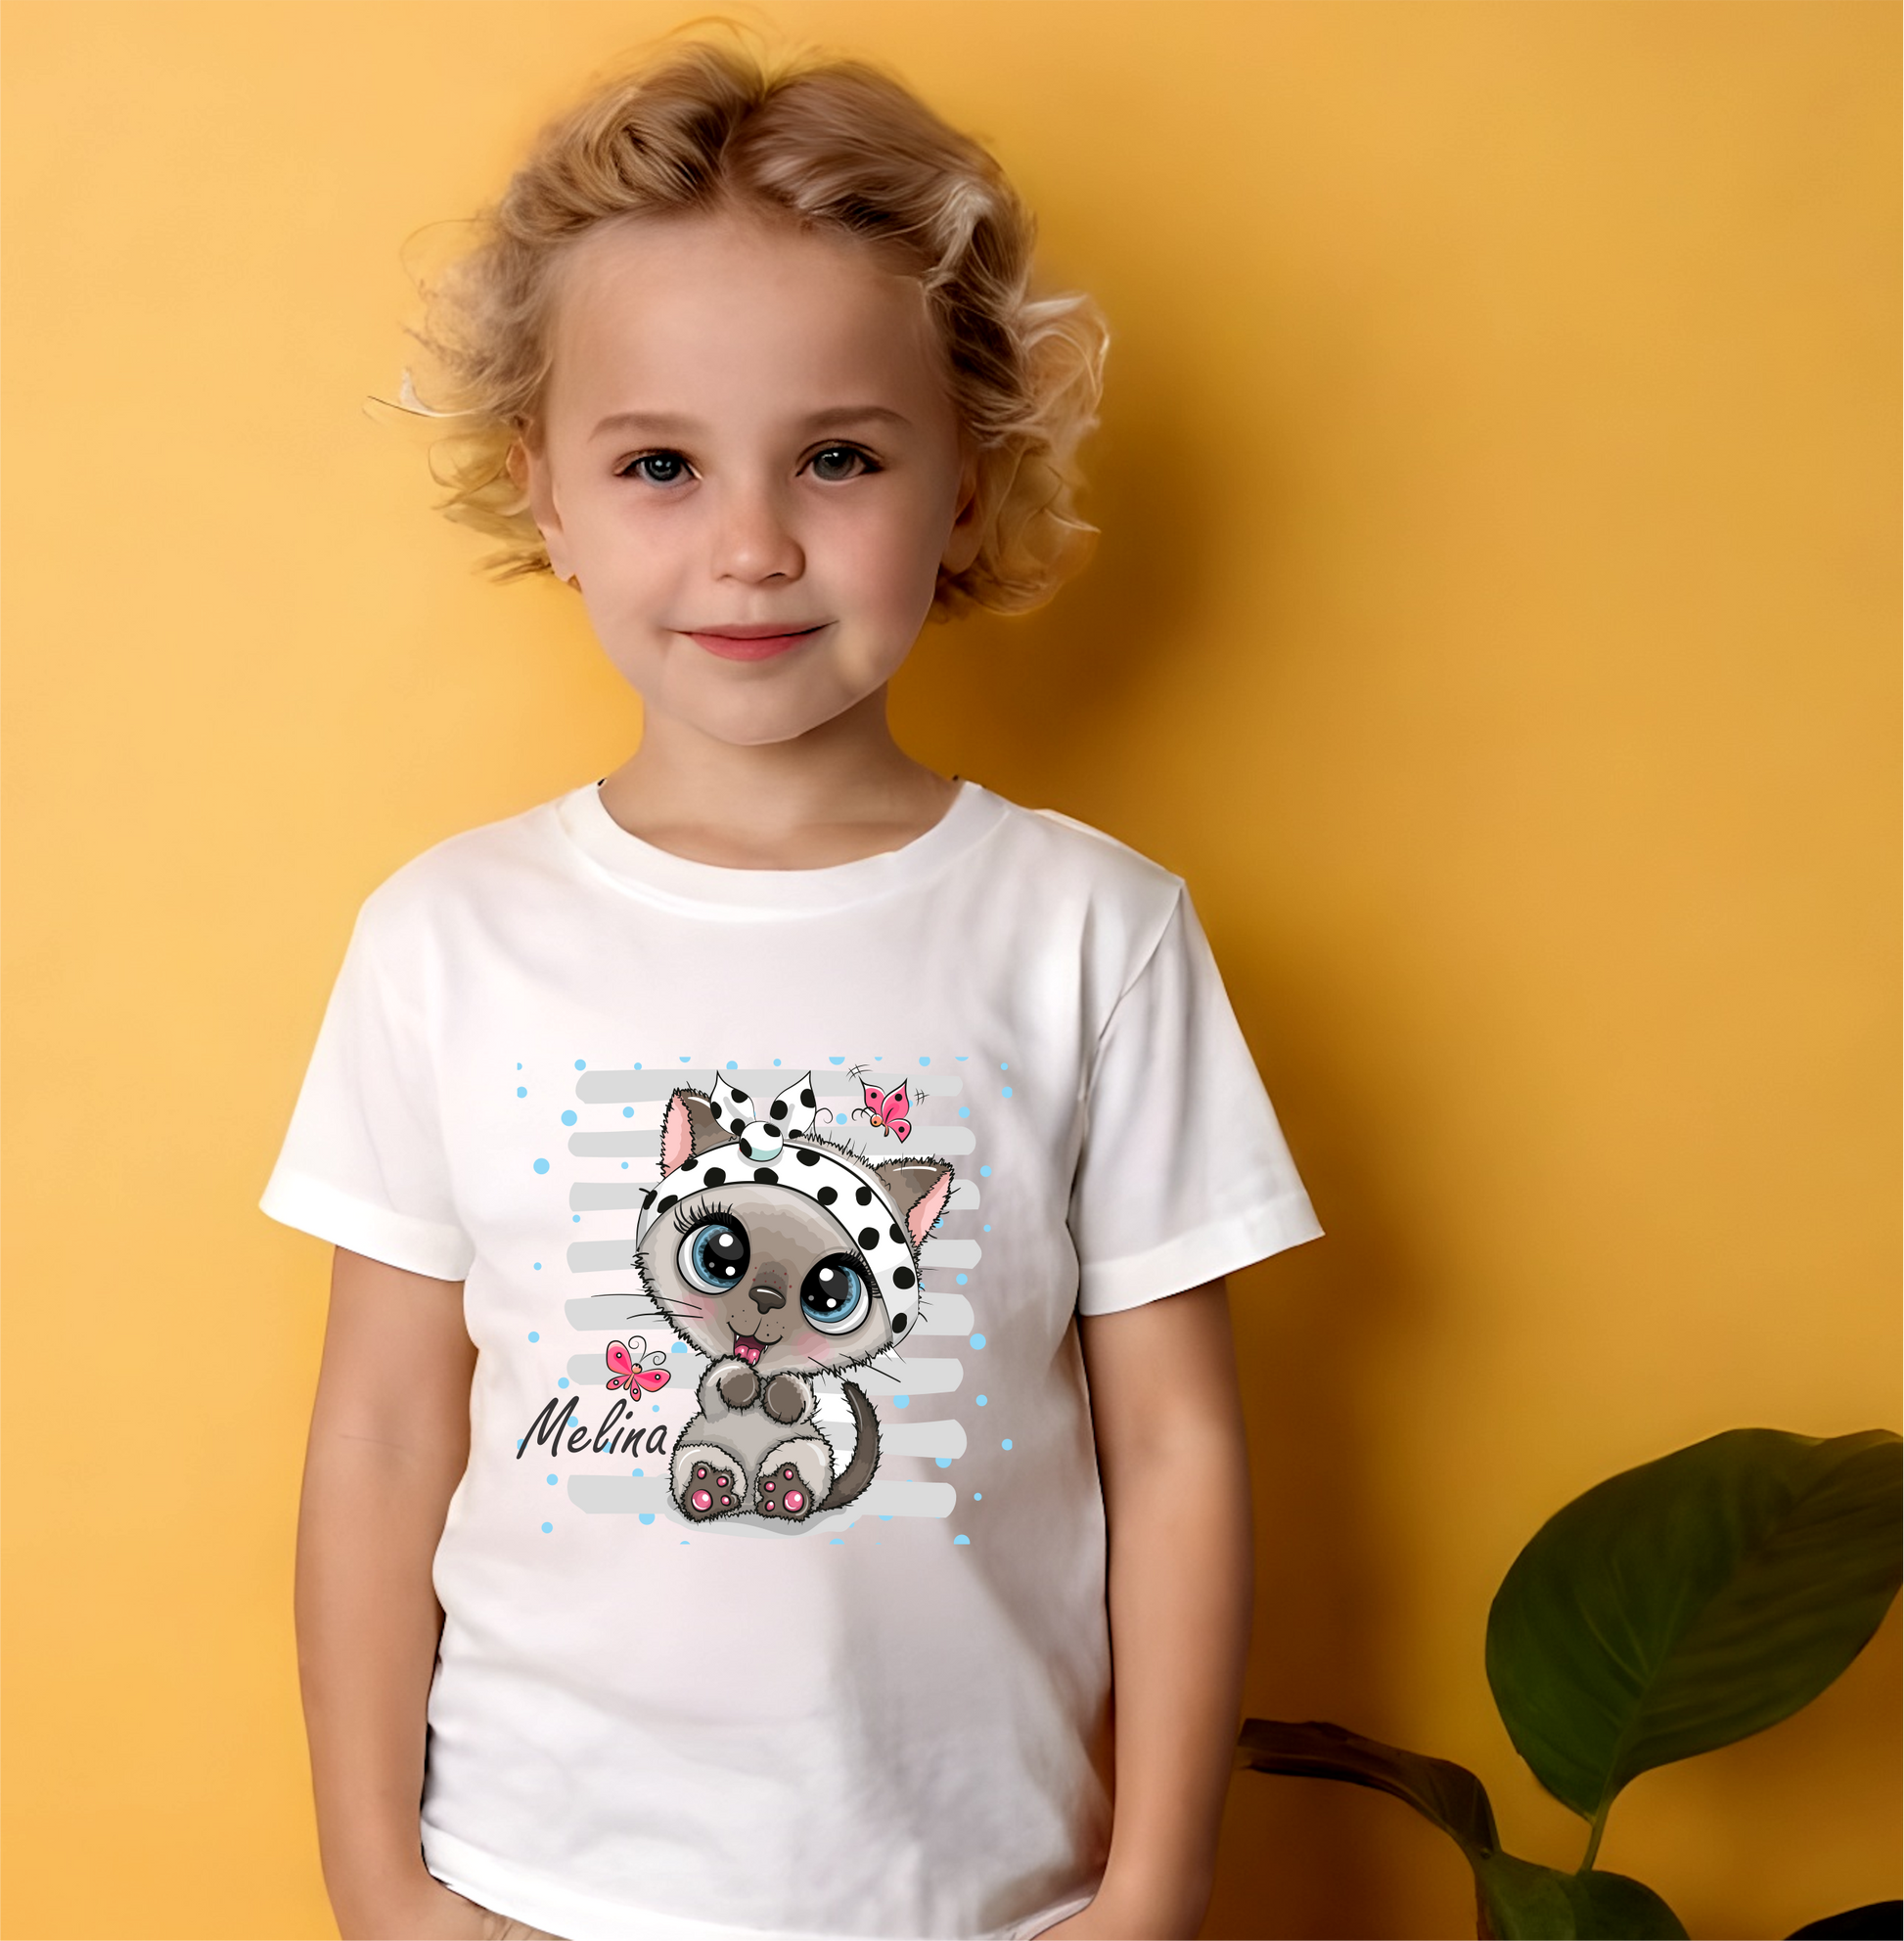 Personalized Cute Kids T-shirts, cat design